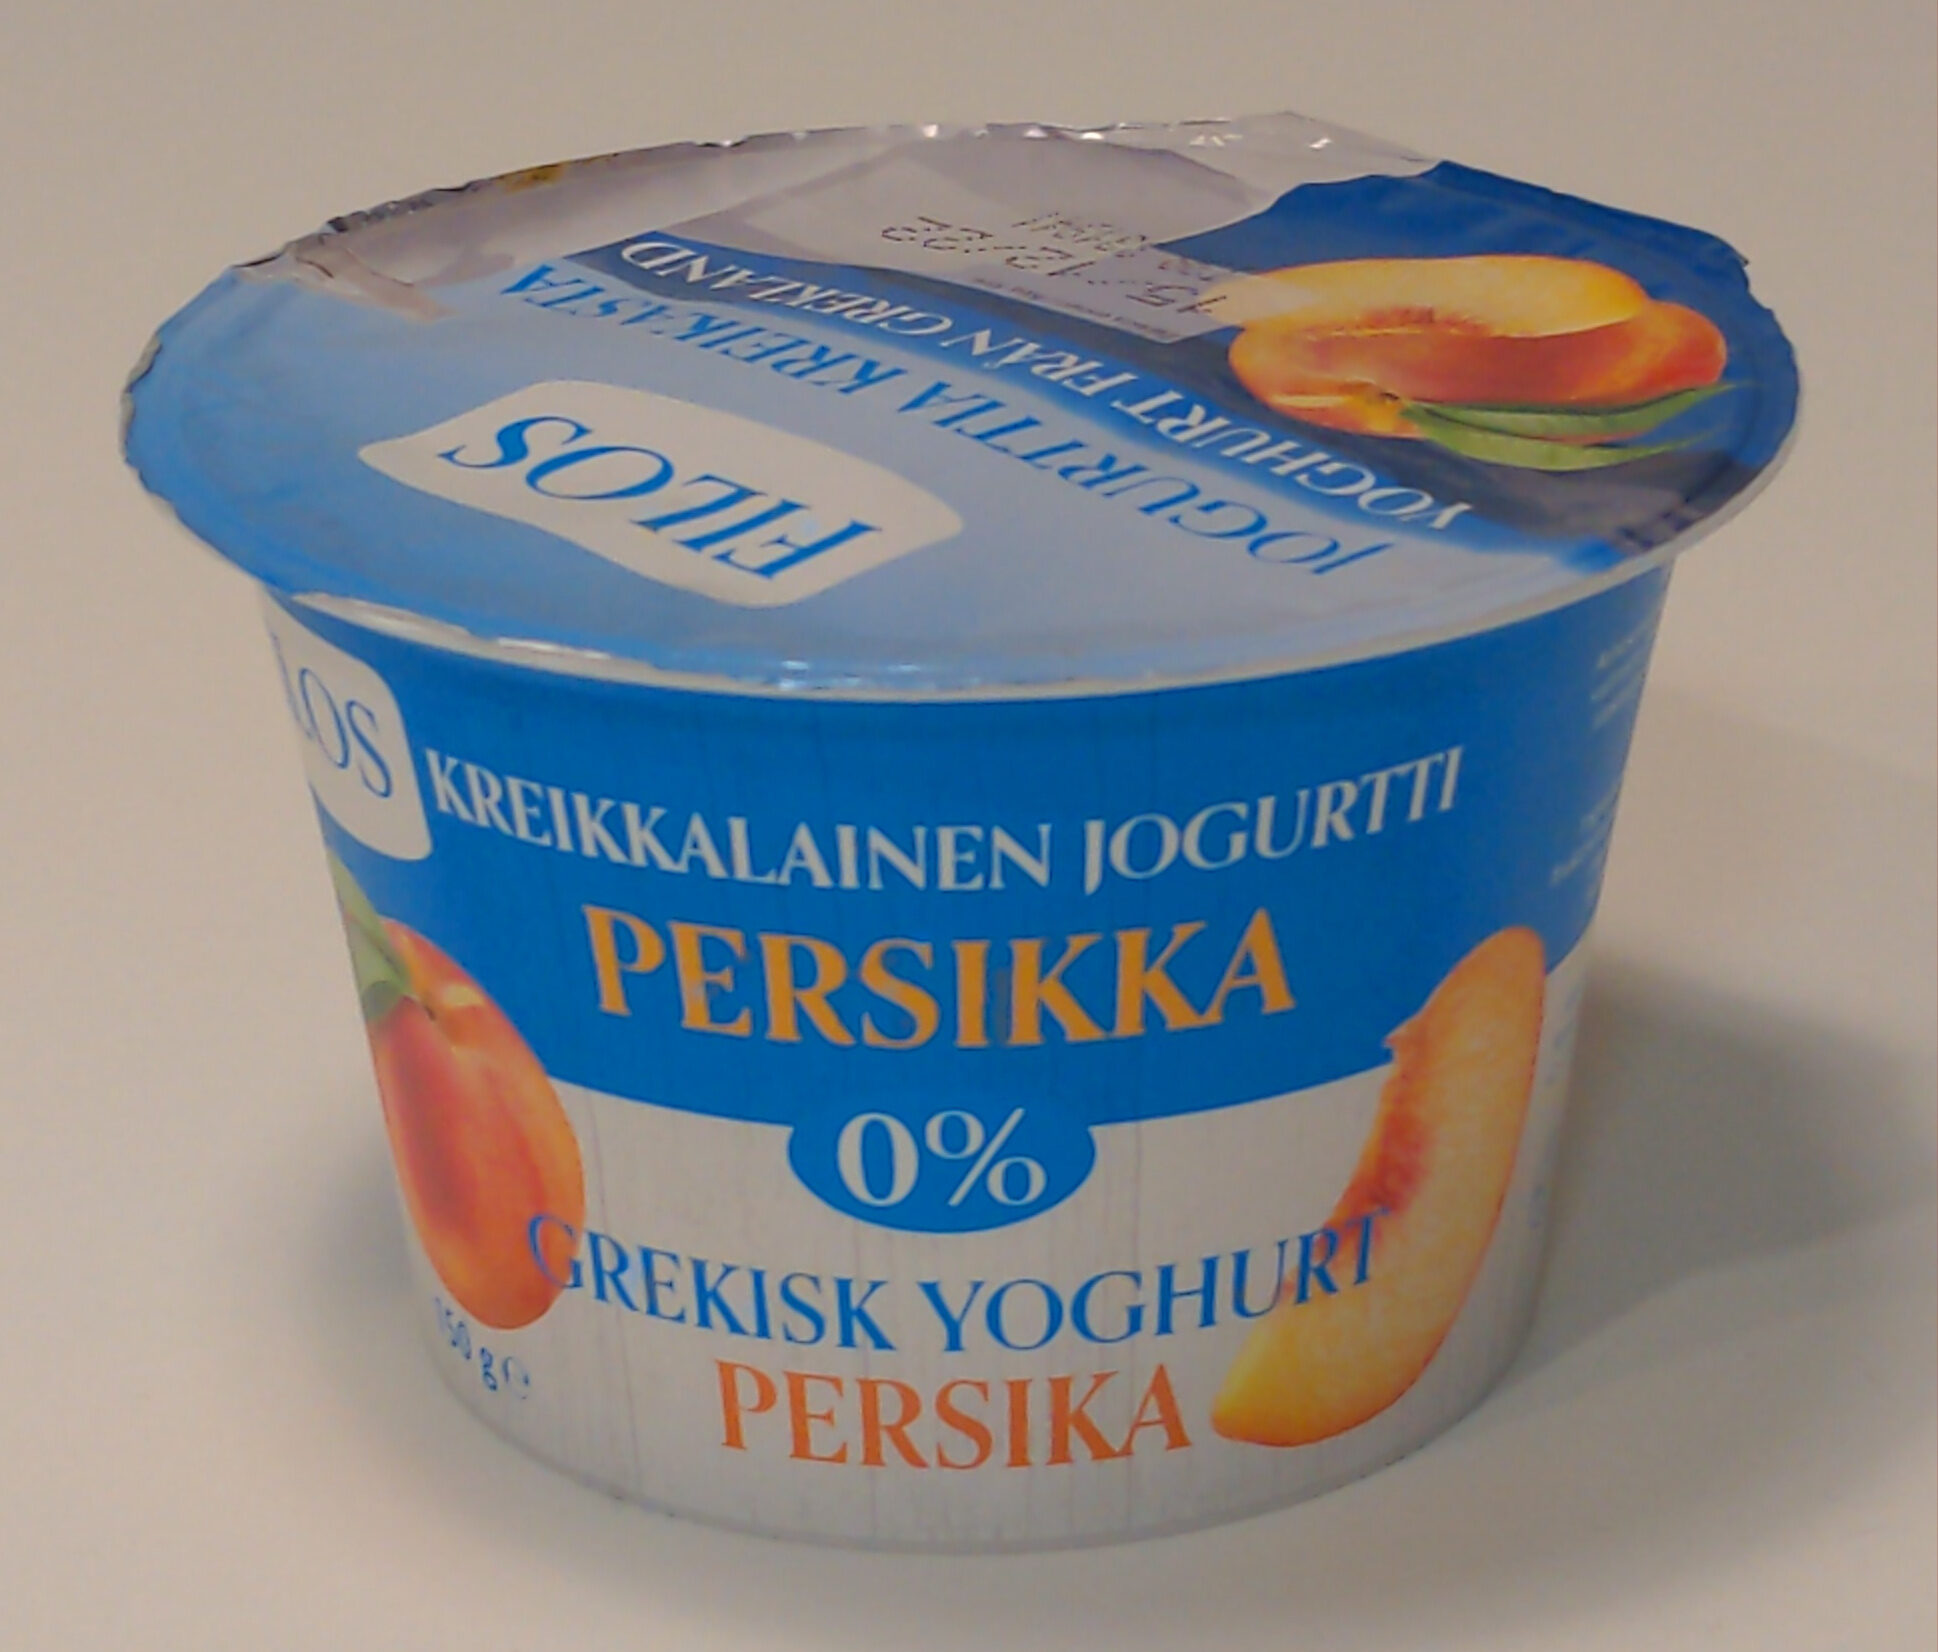 Kreikkalainen jogurtti persikka 0% - Produkt - fi